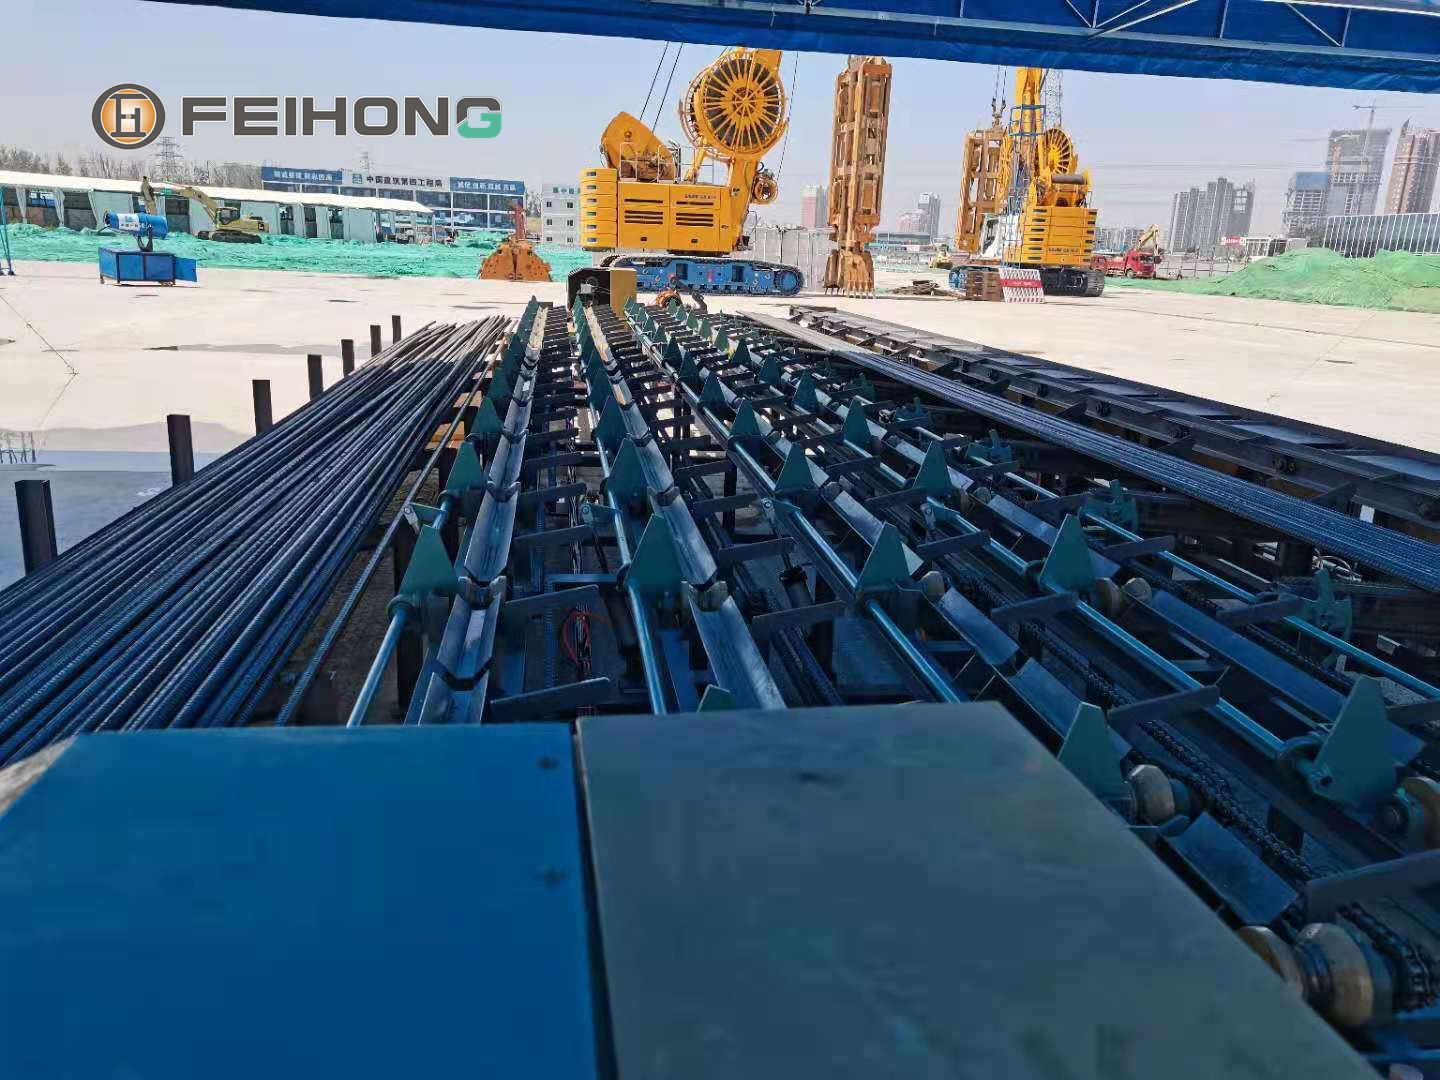 飞宏智能钢筋锯切套丝生产线助力国内路桥项目建设